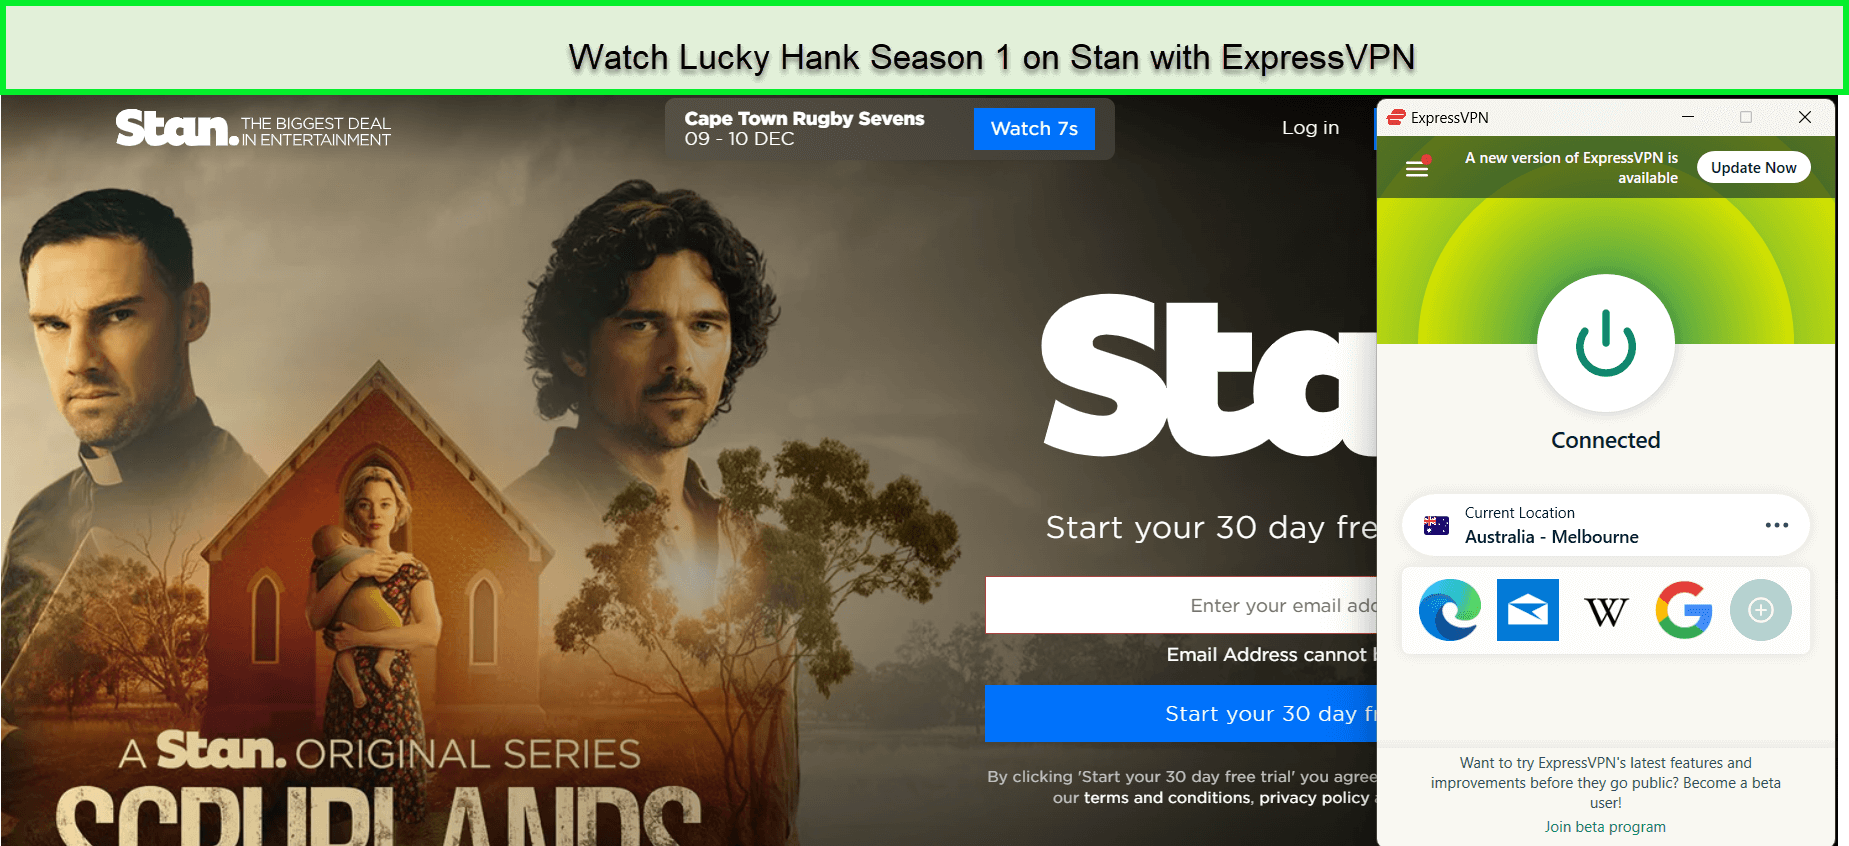 Watch-Lucky-Hank-Season-1-in-Singapore-on-Stan